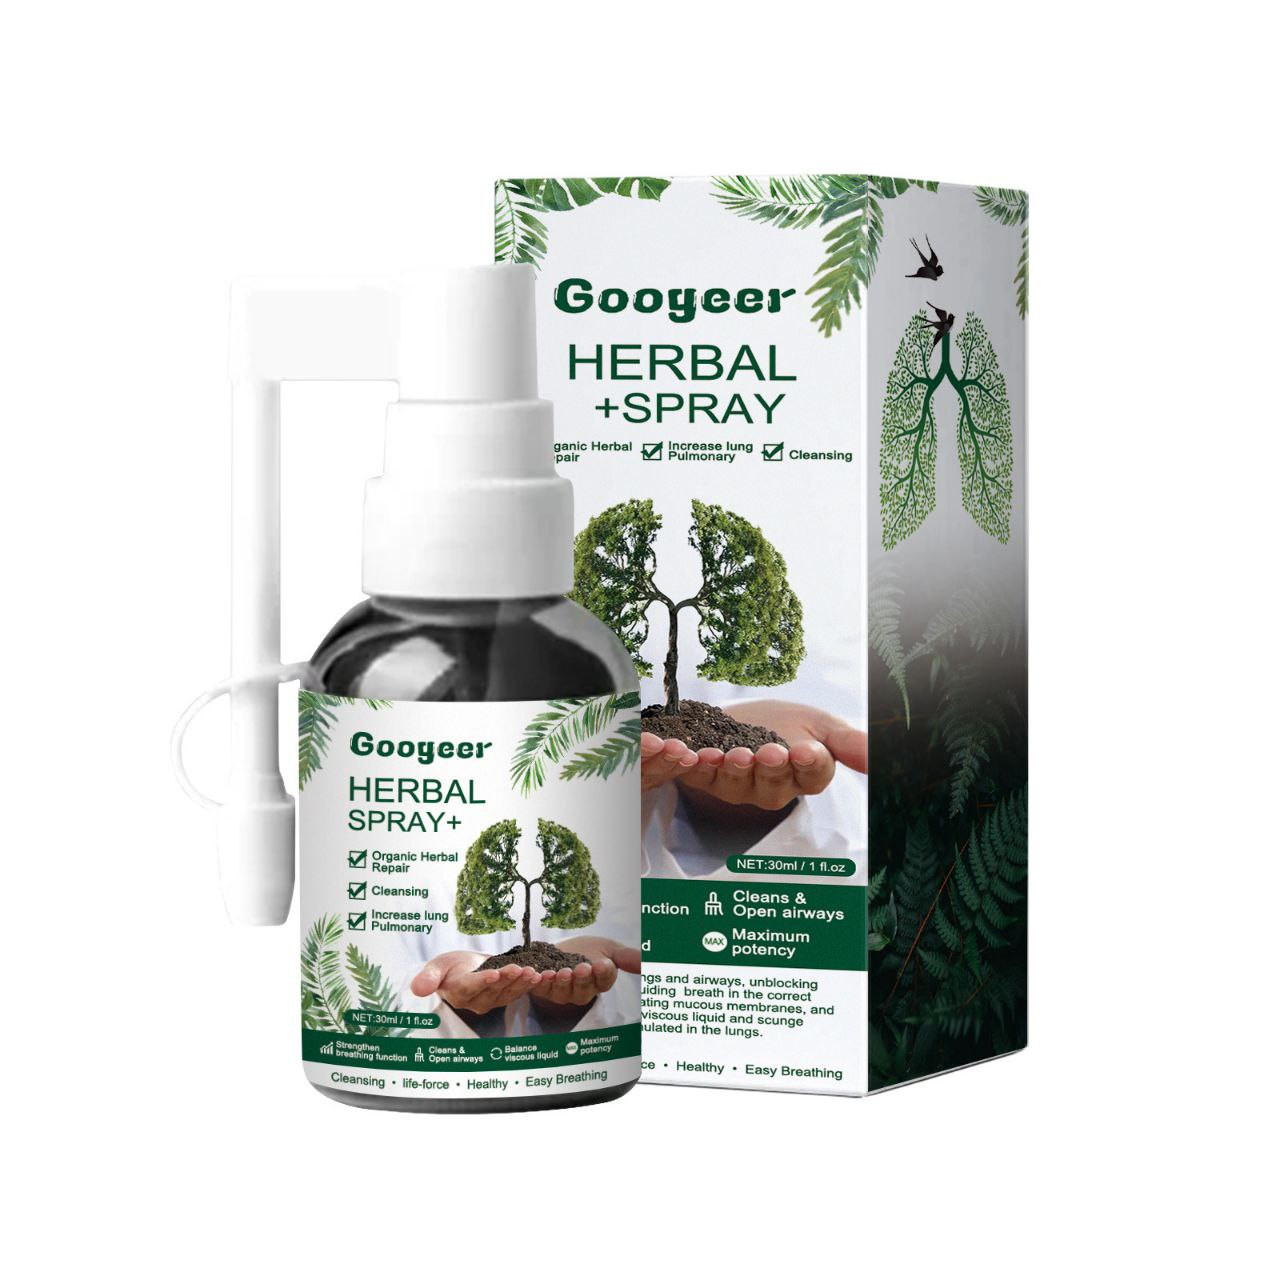 Googeer Herbal Repair Spray Soulage l'inconfort physique, la fatigue, détend le corps en spray de soins à base de plantes 30ml